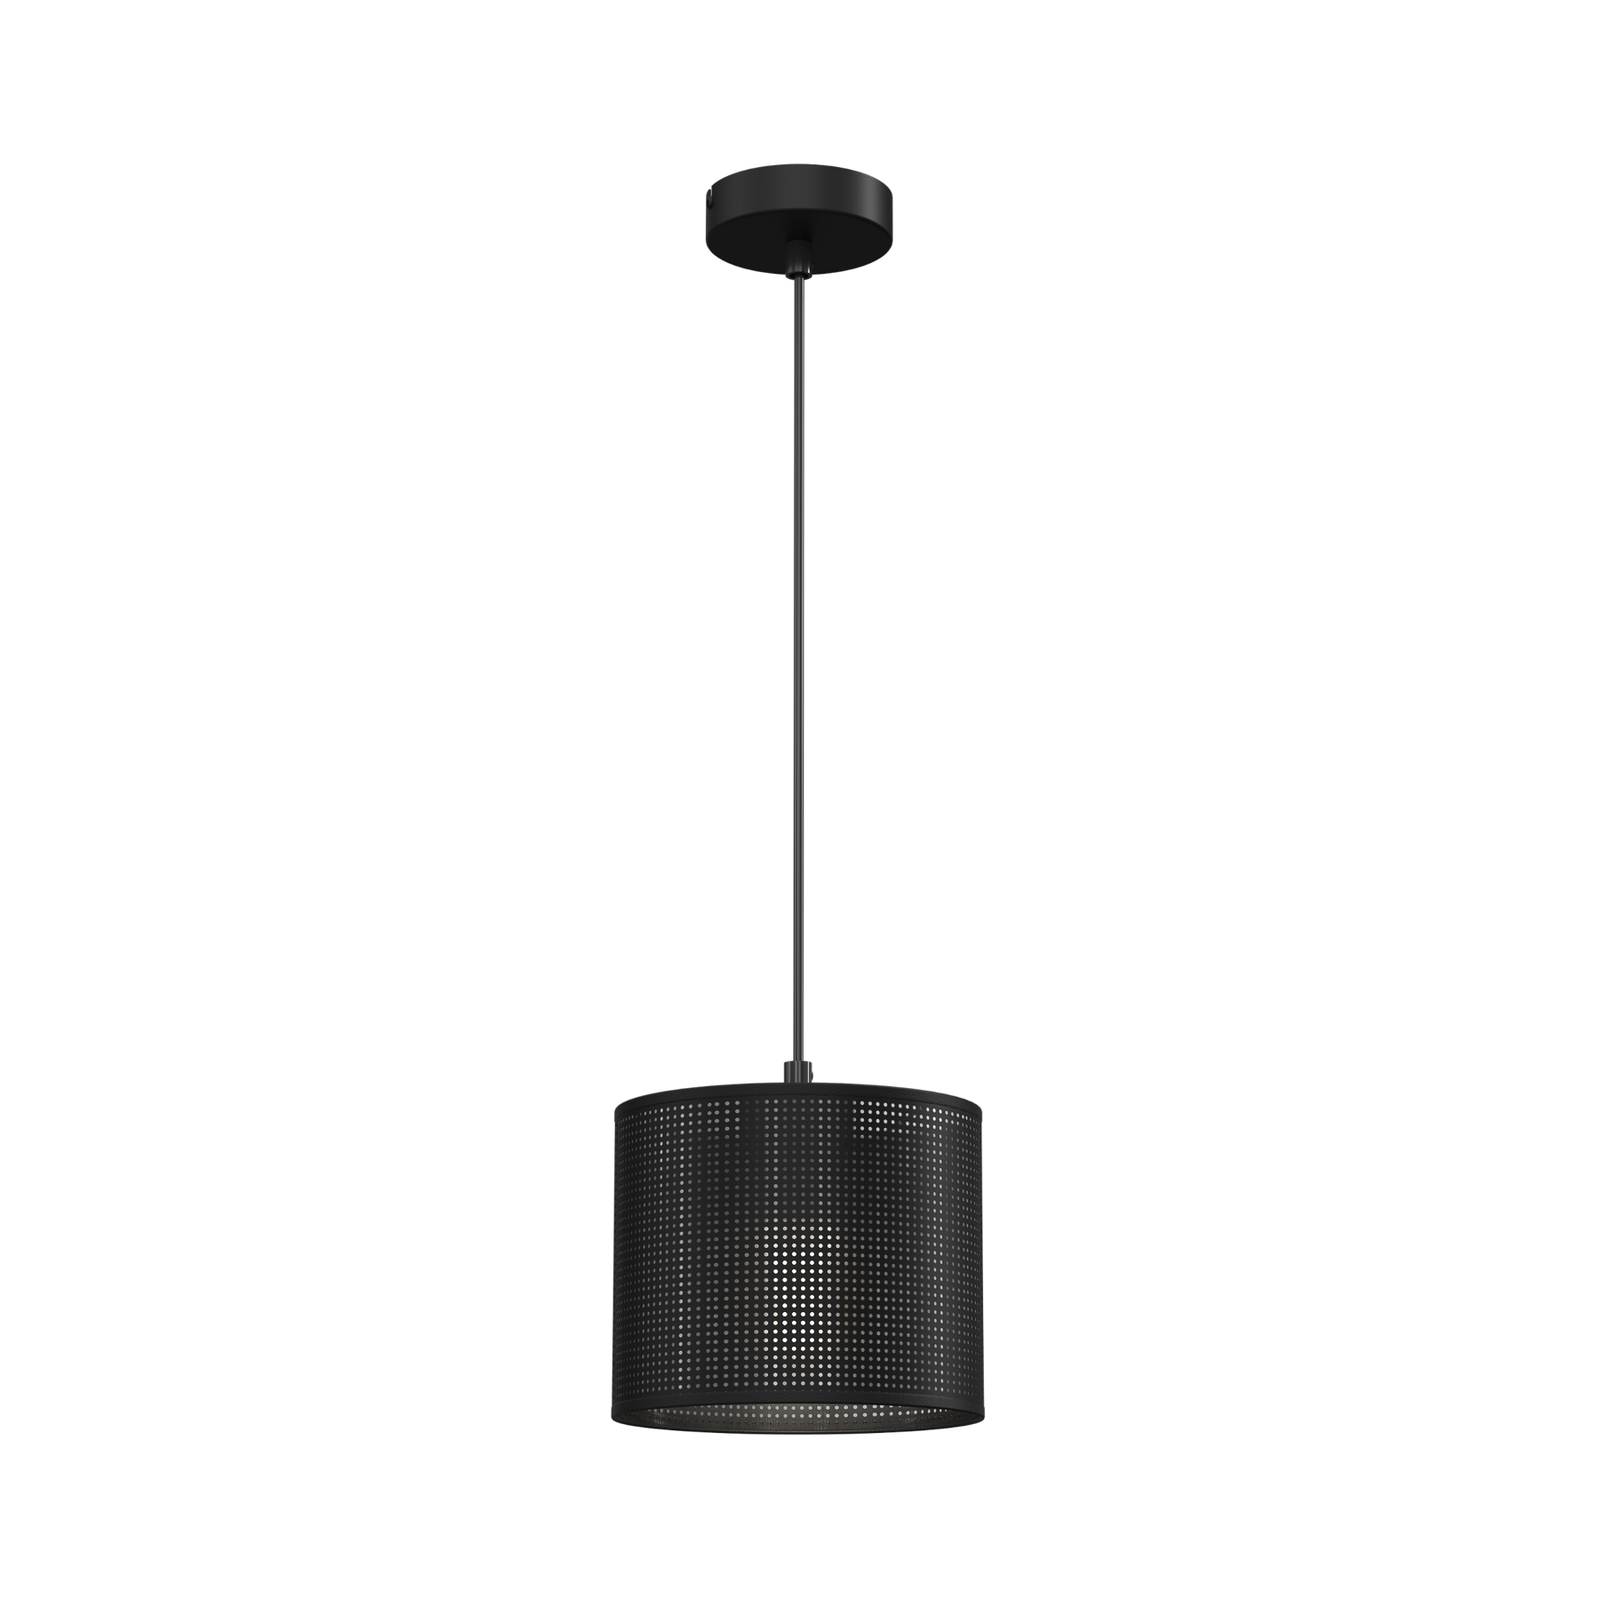 Jovin pendant light, one-bulb, Ø 18 cm, black